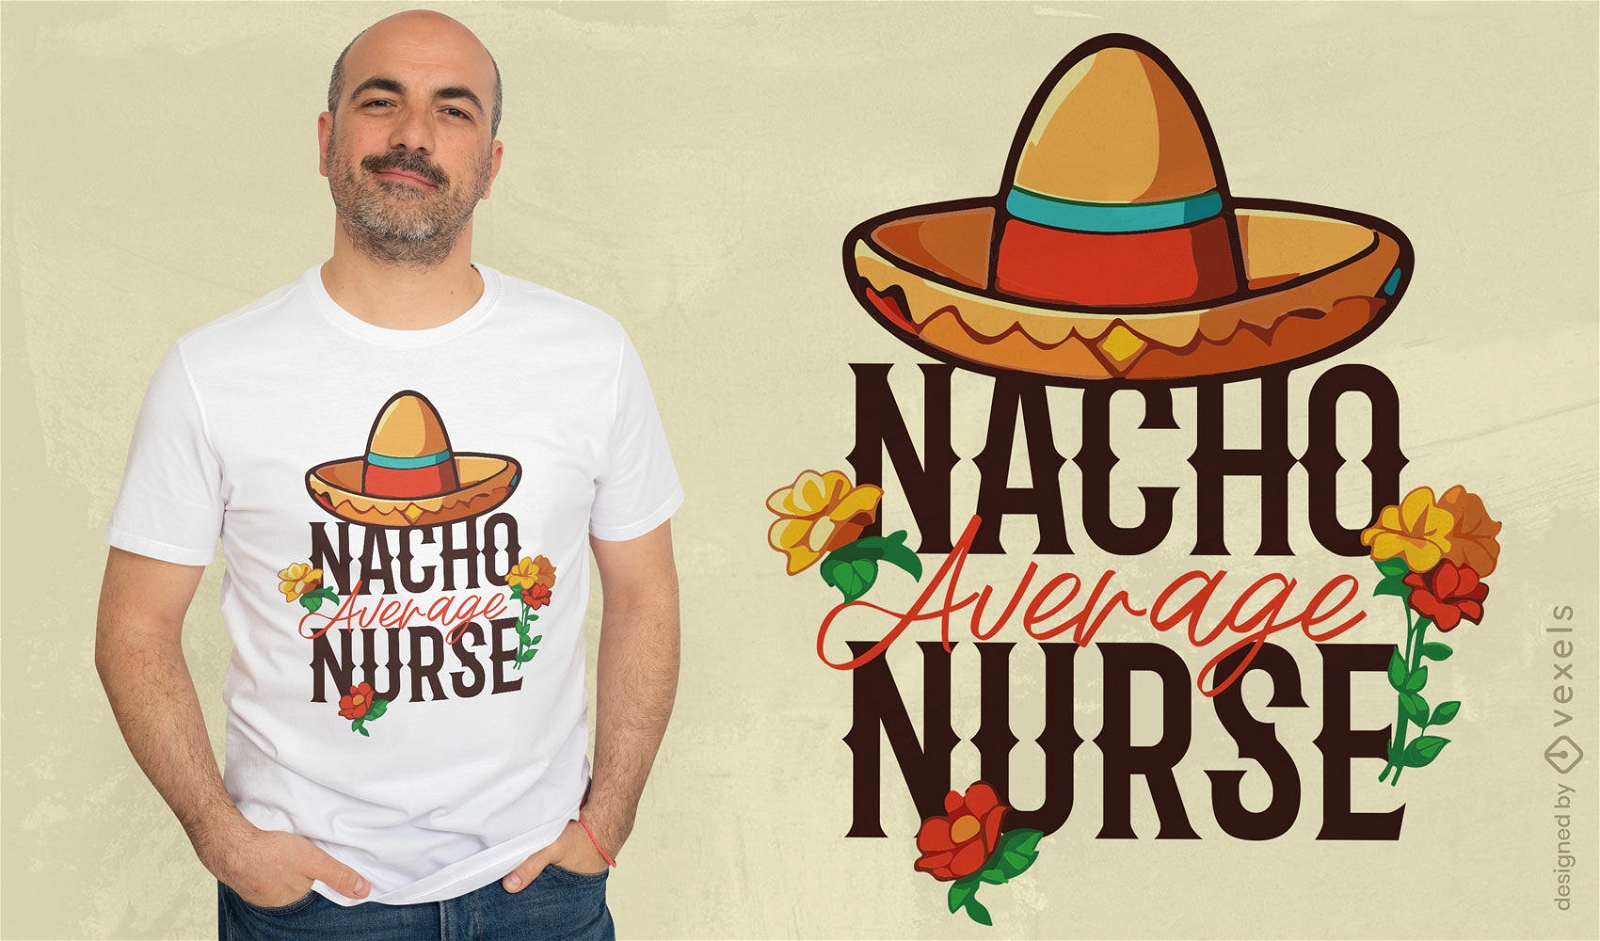 Wortspiel-T-Shirt-Design mit Nachos-Motiv